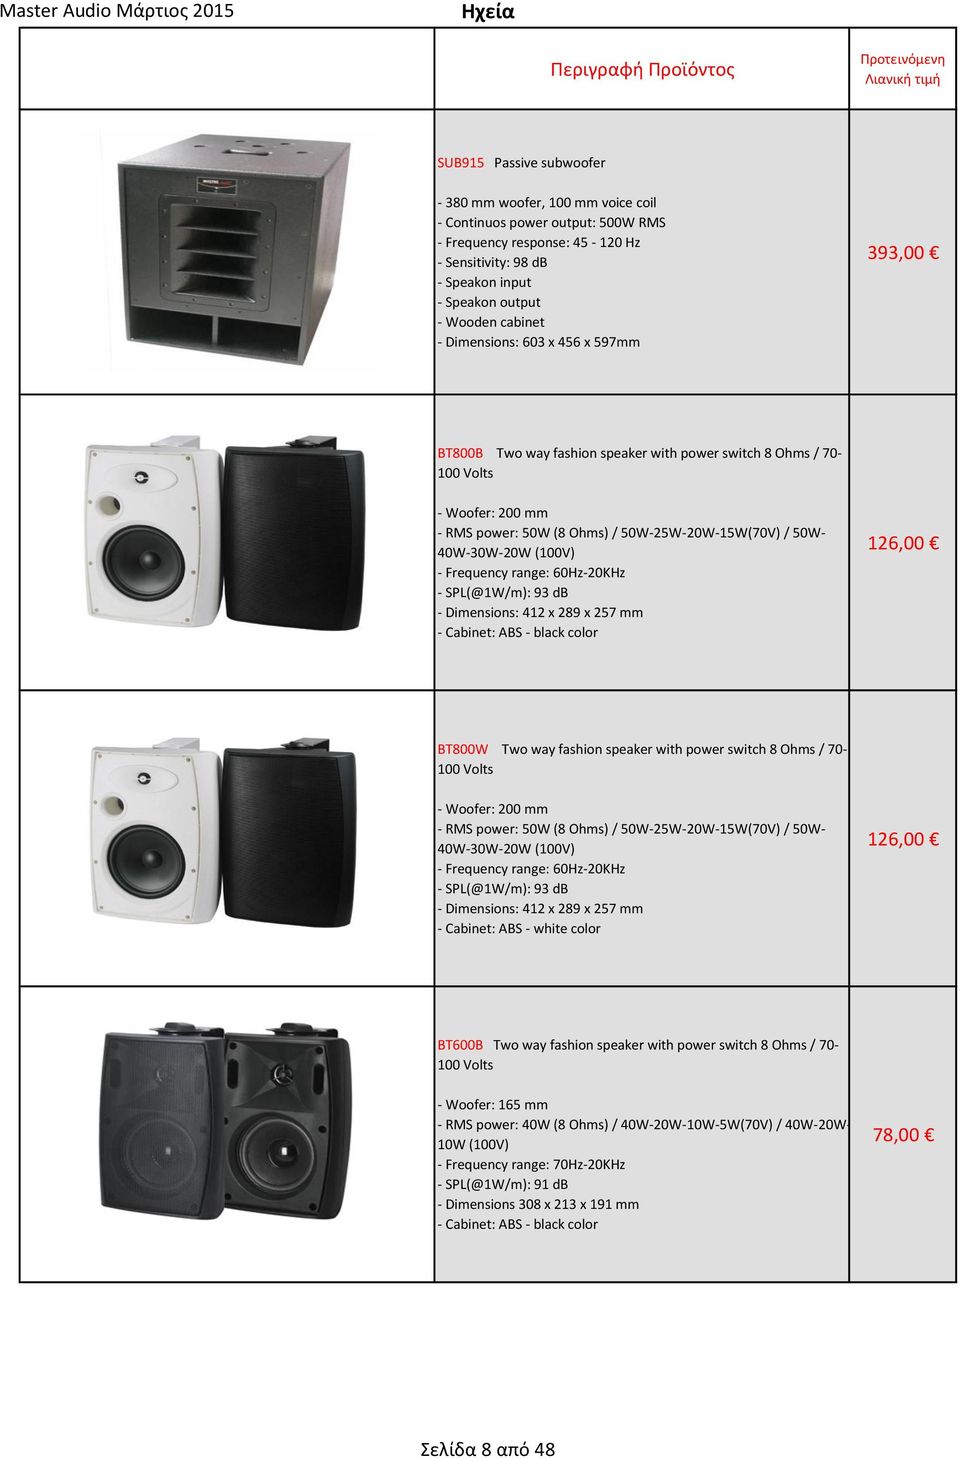 40W-30W-20W (100V) - Frequency range: 60Hz-20KHz - SPL(@1W/m): 93 db - Dimensions: 412 x 289 x 257 mm - Cabinet: ABS - black color 126,00 BT800W Two way fashion speaker with power switch 8 Ohms /